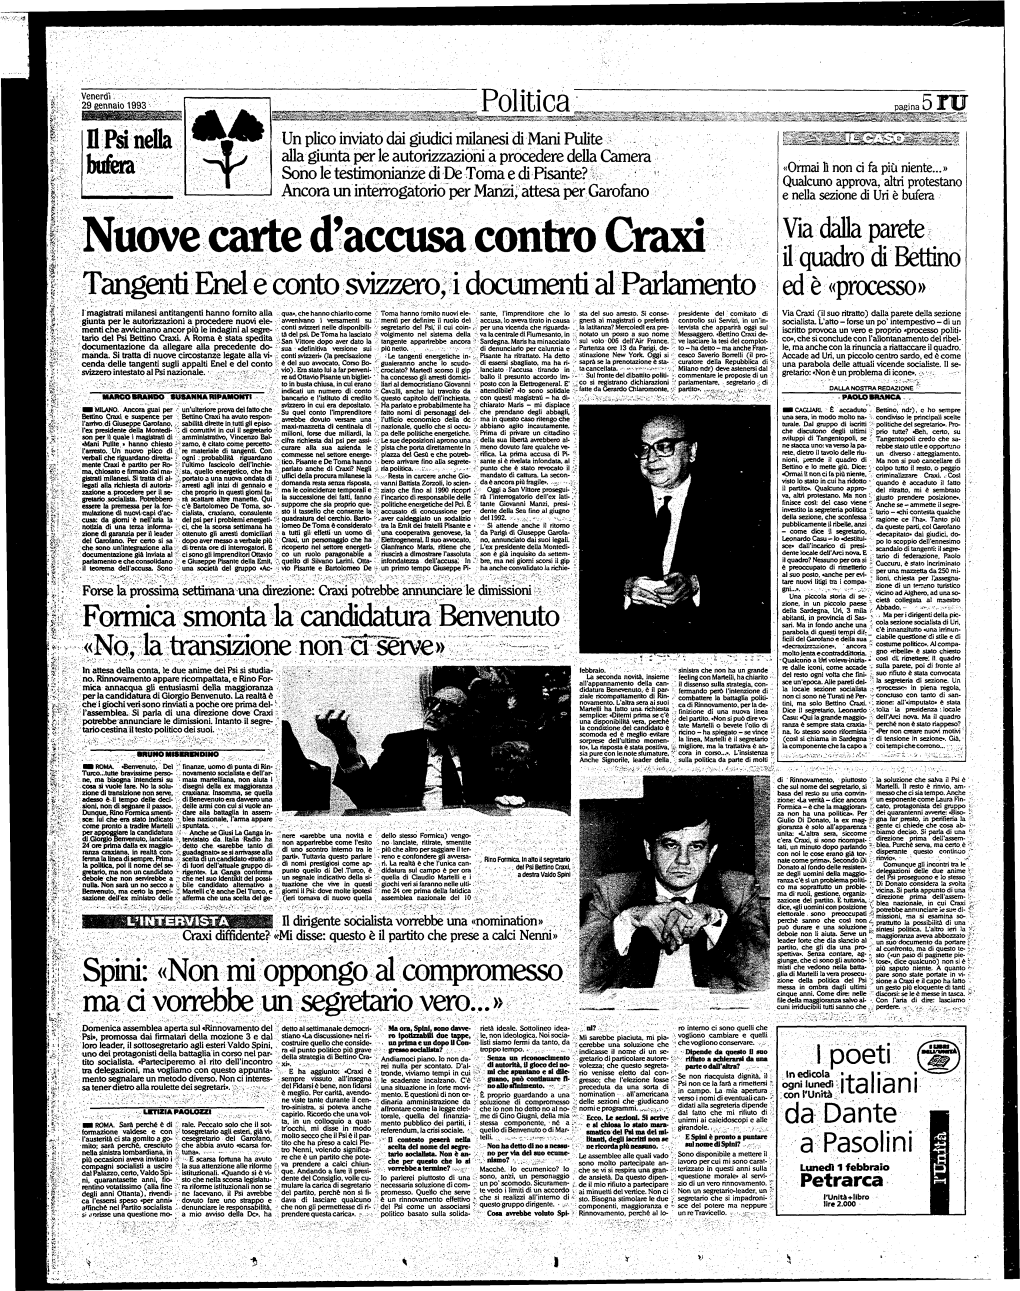 Nuove Calte D'accusa Contro Craxi